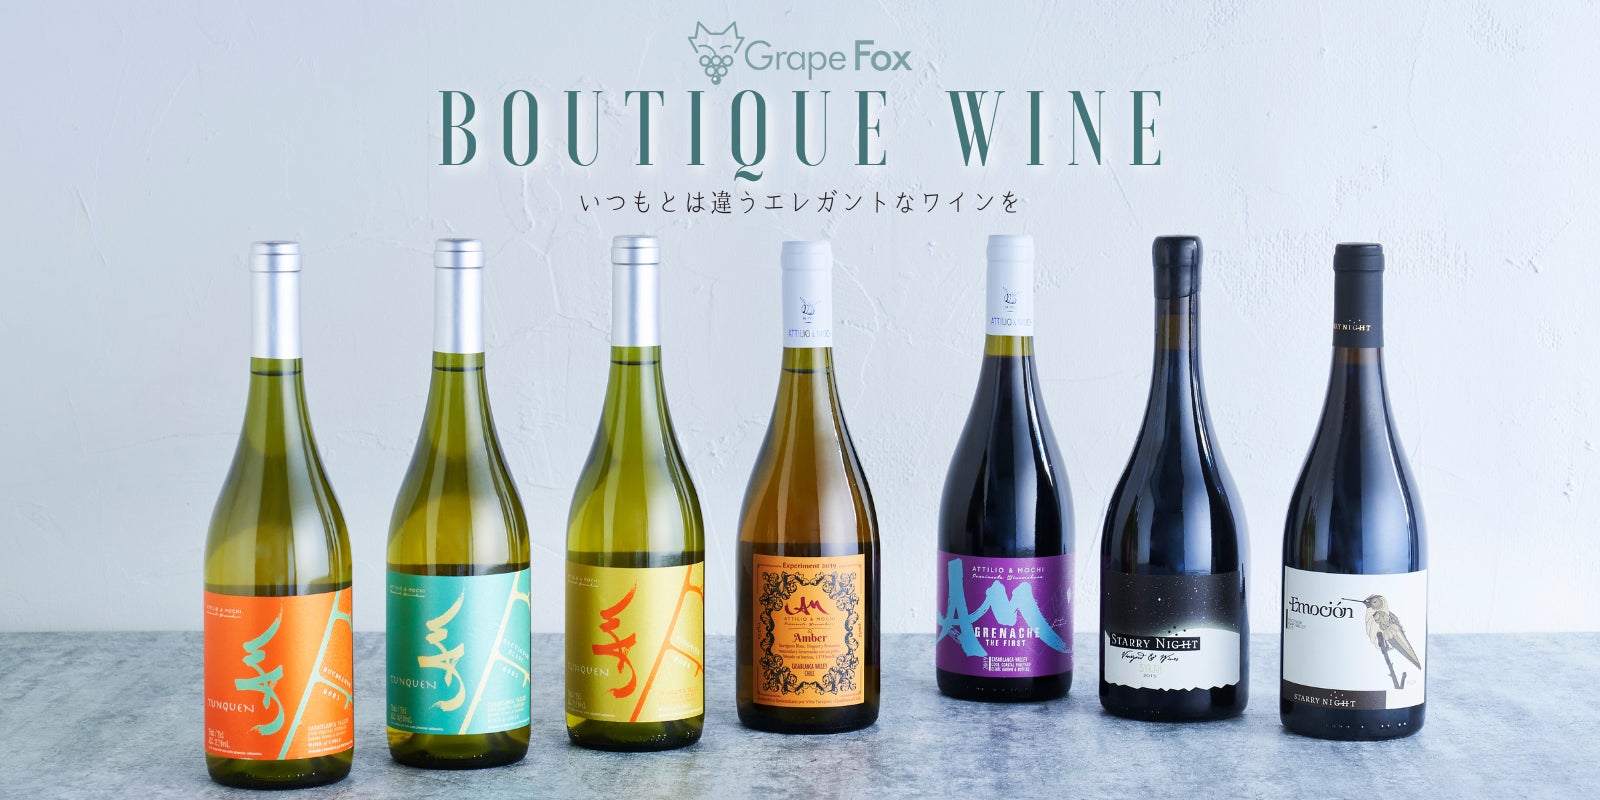 生産数10,000本以下の希少ワインを販売するGrapeFox、最古のワイン生産国の一つギリシャから【日本初上陸】のワインを輸入、「Makuake」にて先行・限定販売プロジェクトを開始のサブ画像5